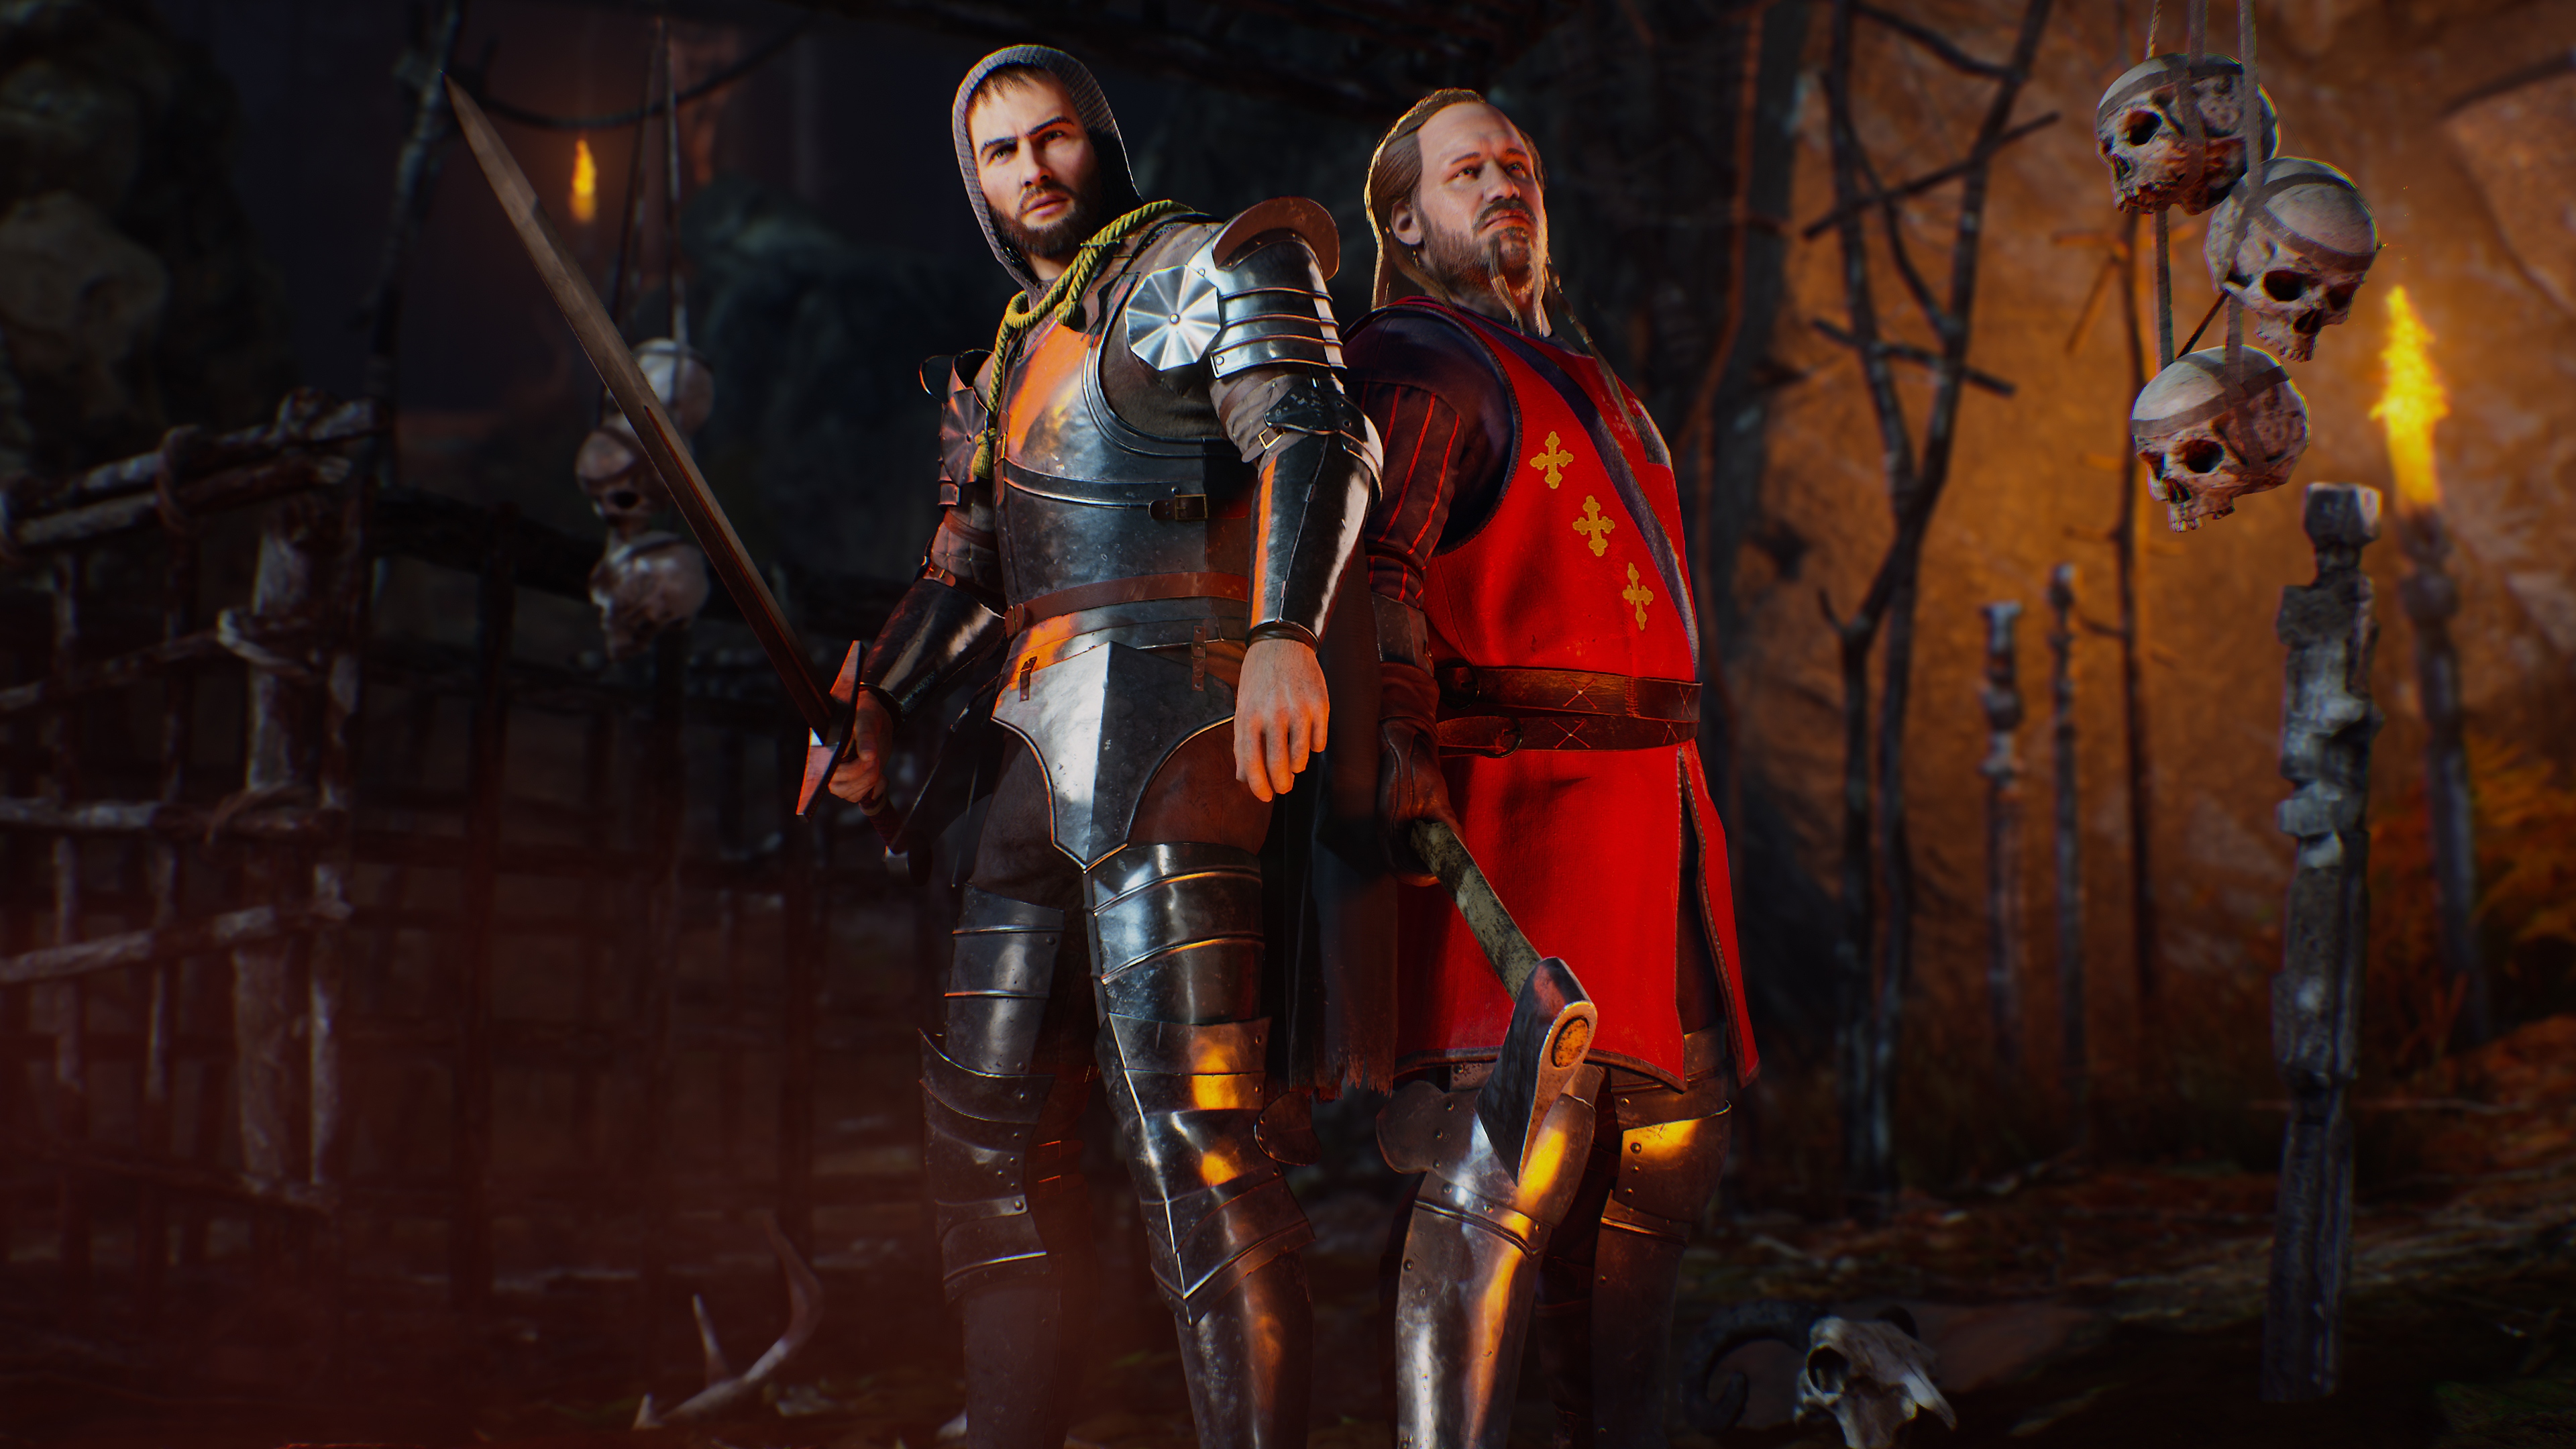 Evil Dead: The Game - Istantanea della schermata che mostra due personaggi vestiti con abiliti cavallereschi